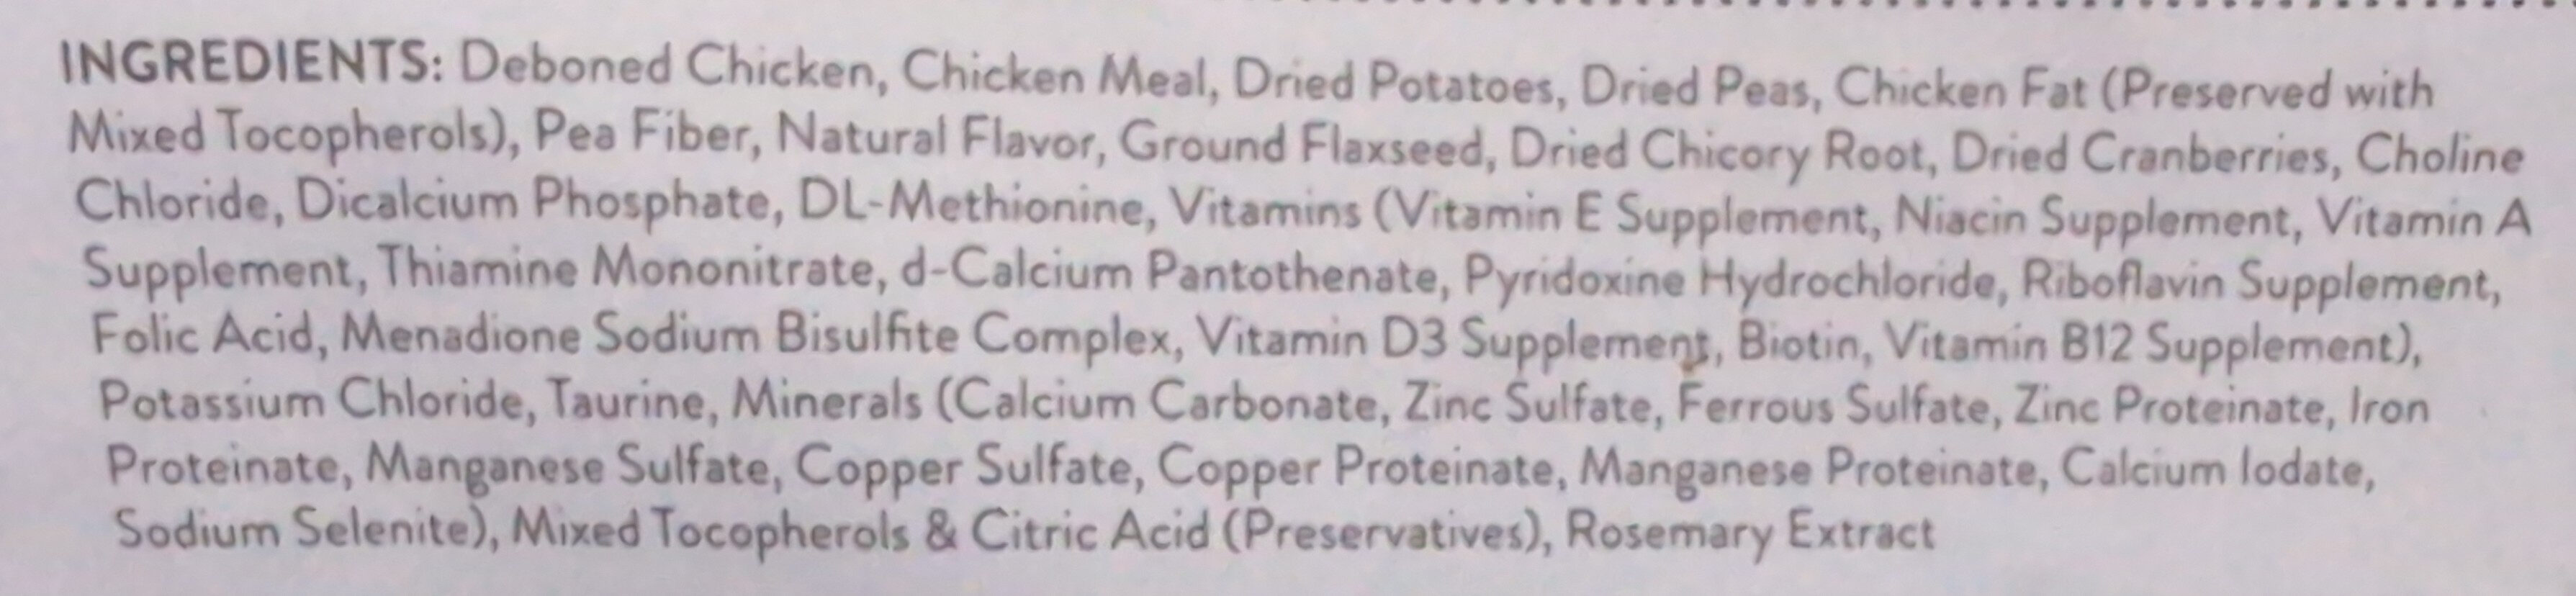 Simply Nourish Grain Free Adult Cat Food Chicken & Pea - Ingredients - en